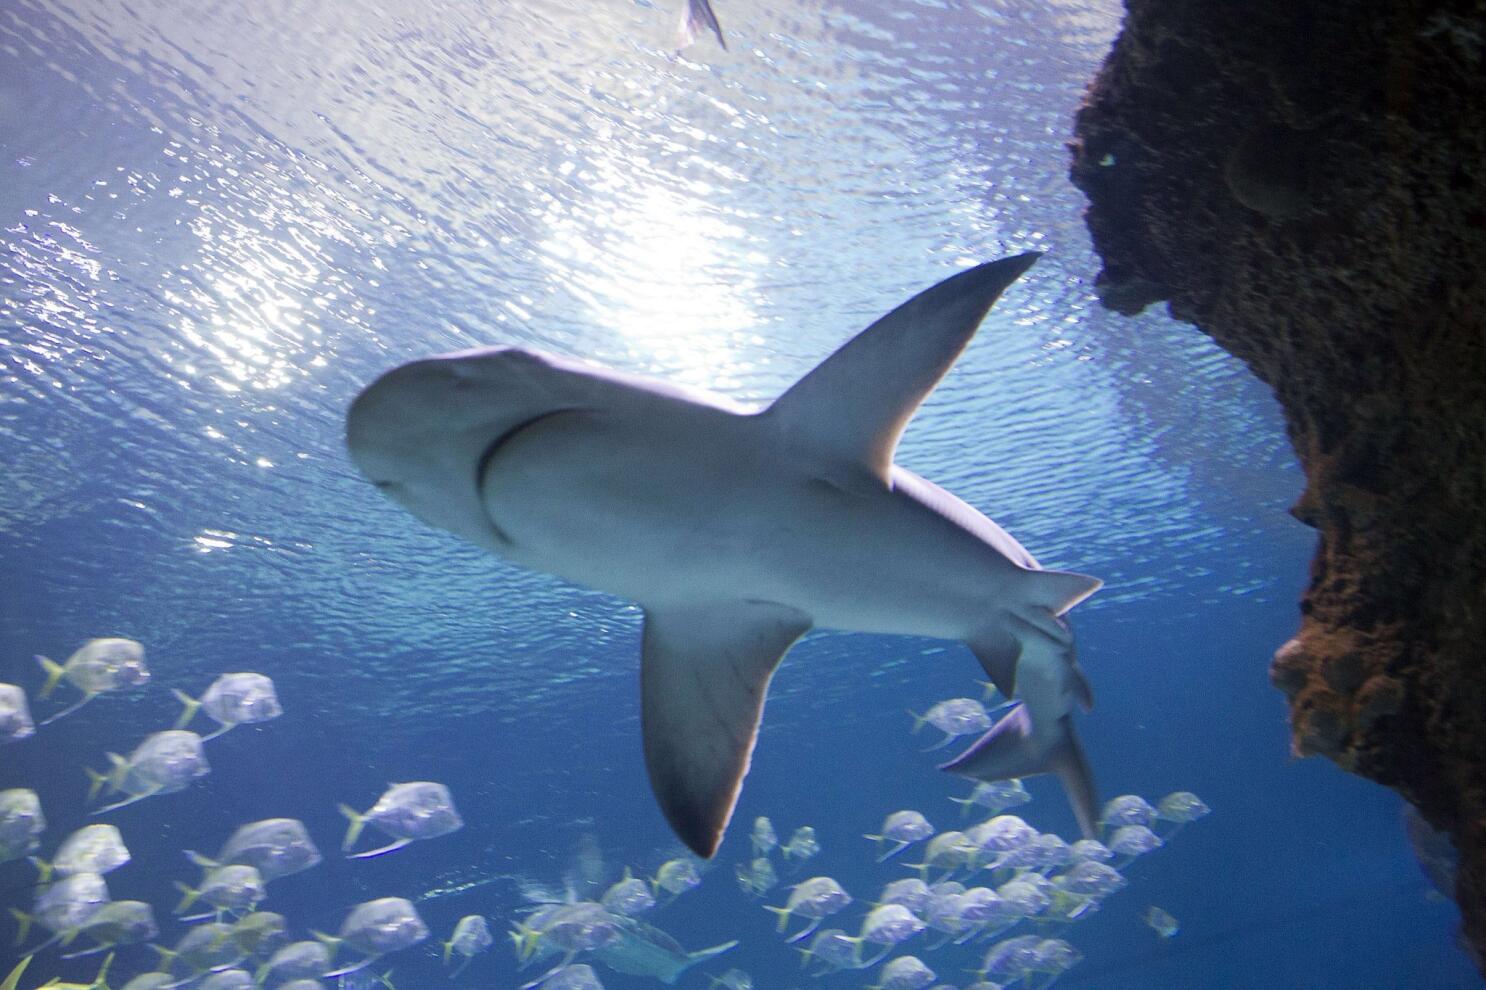 Shark Reef at Mandalay Bay debuts new shark exhibit